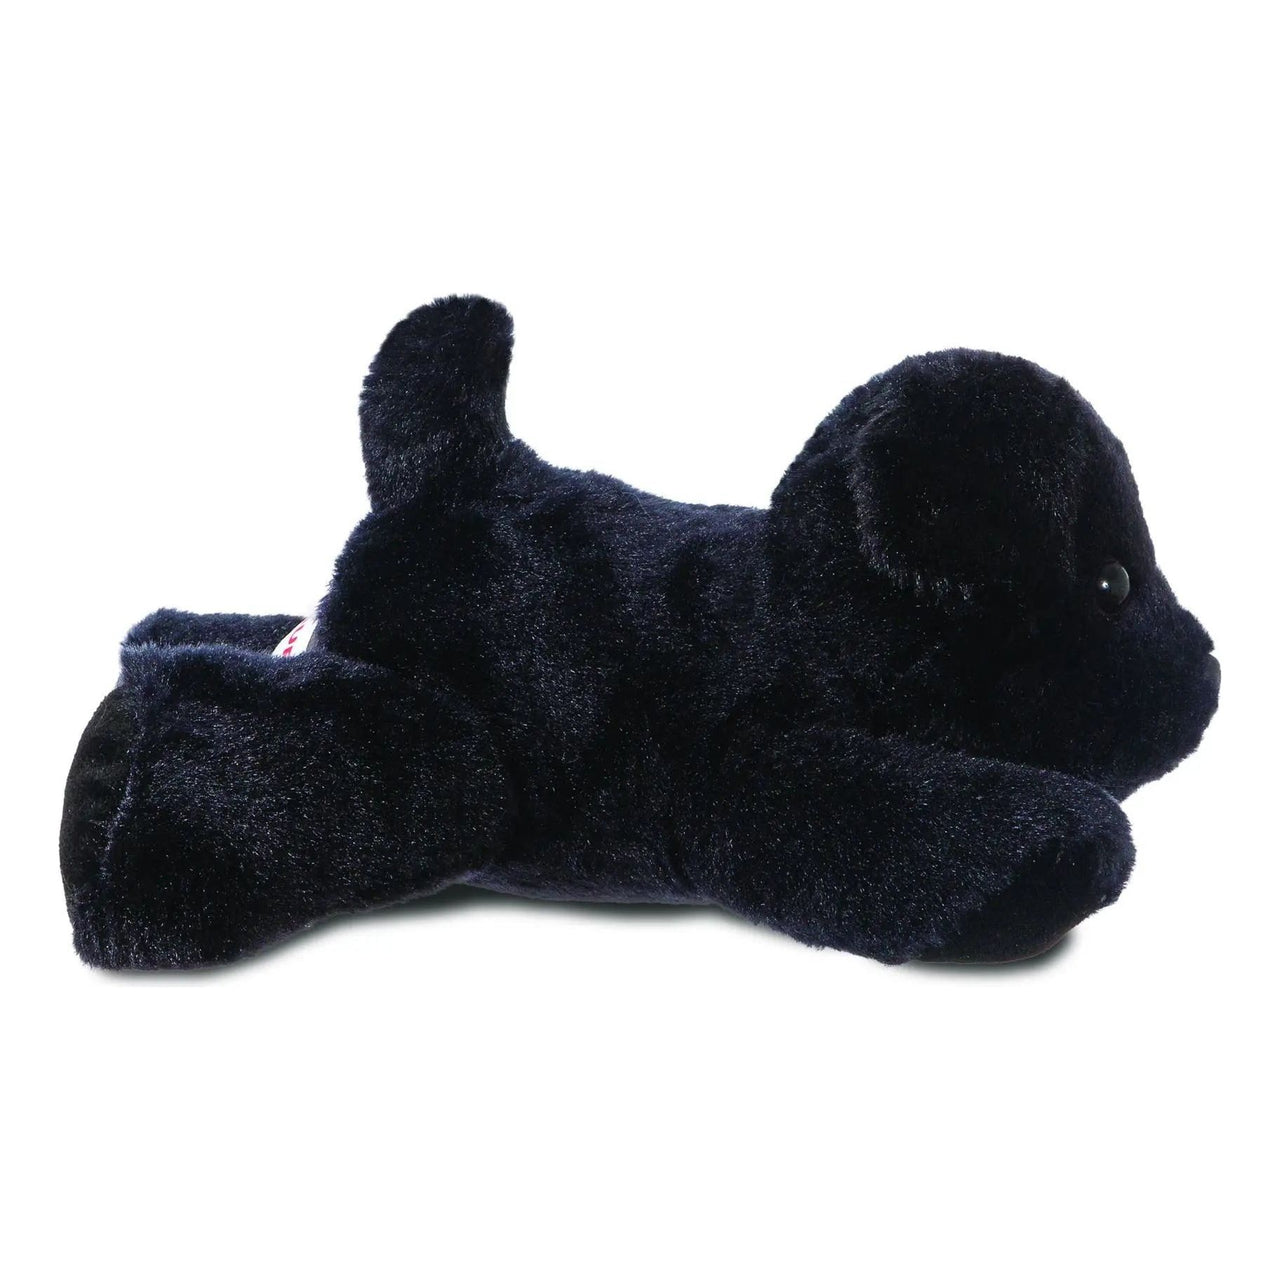 Mini Flopsies Blackie Black Labrador 8" Plush Aurora